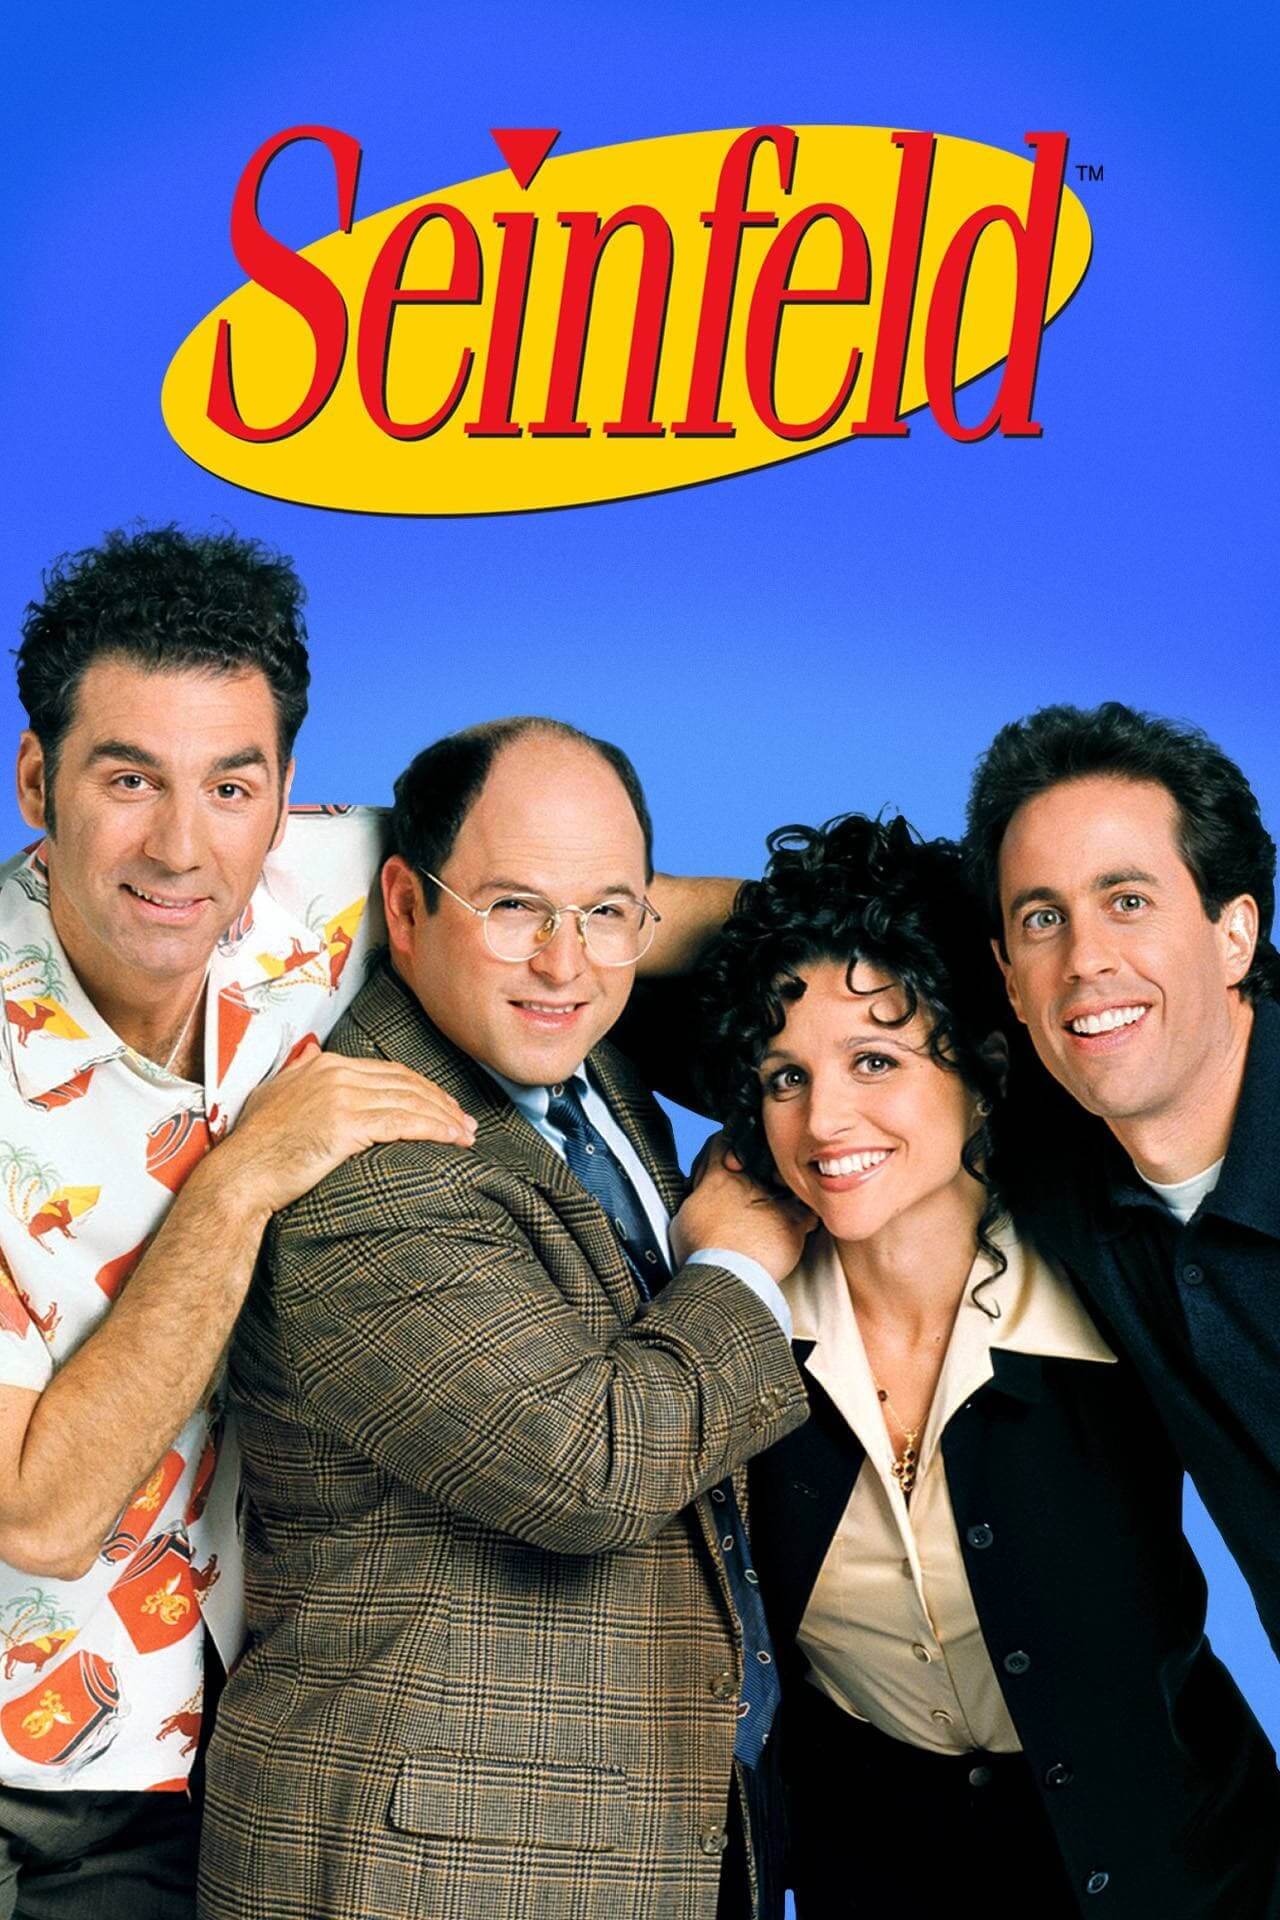 ساینفلد (Seinfeld)